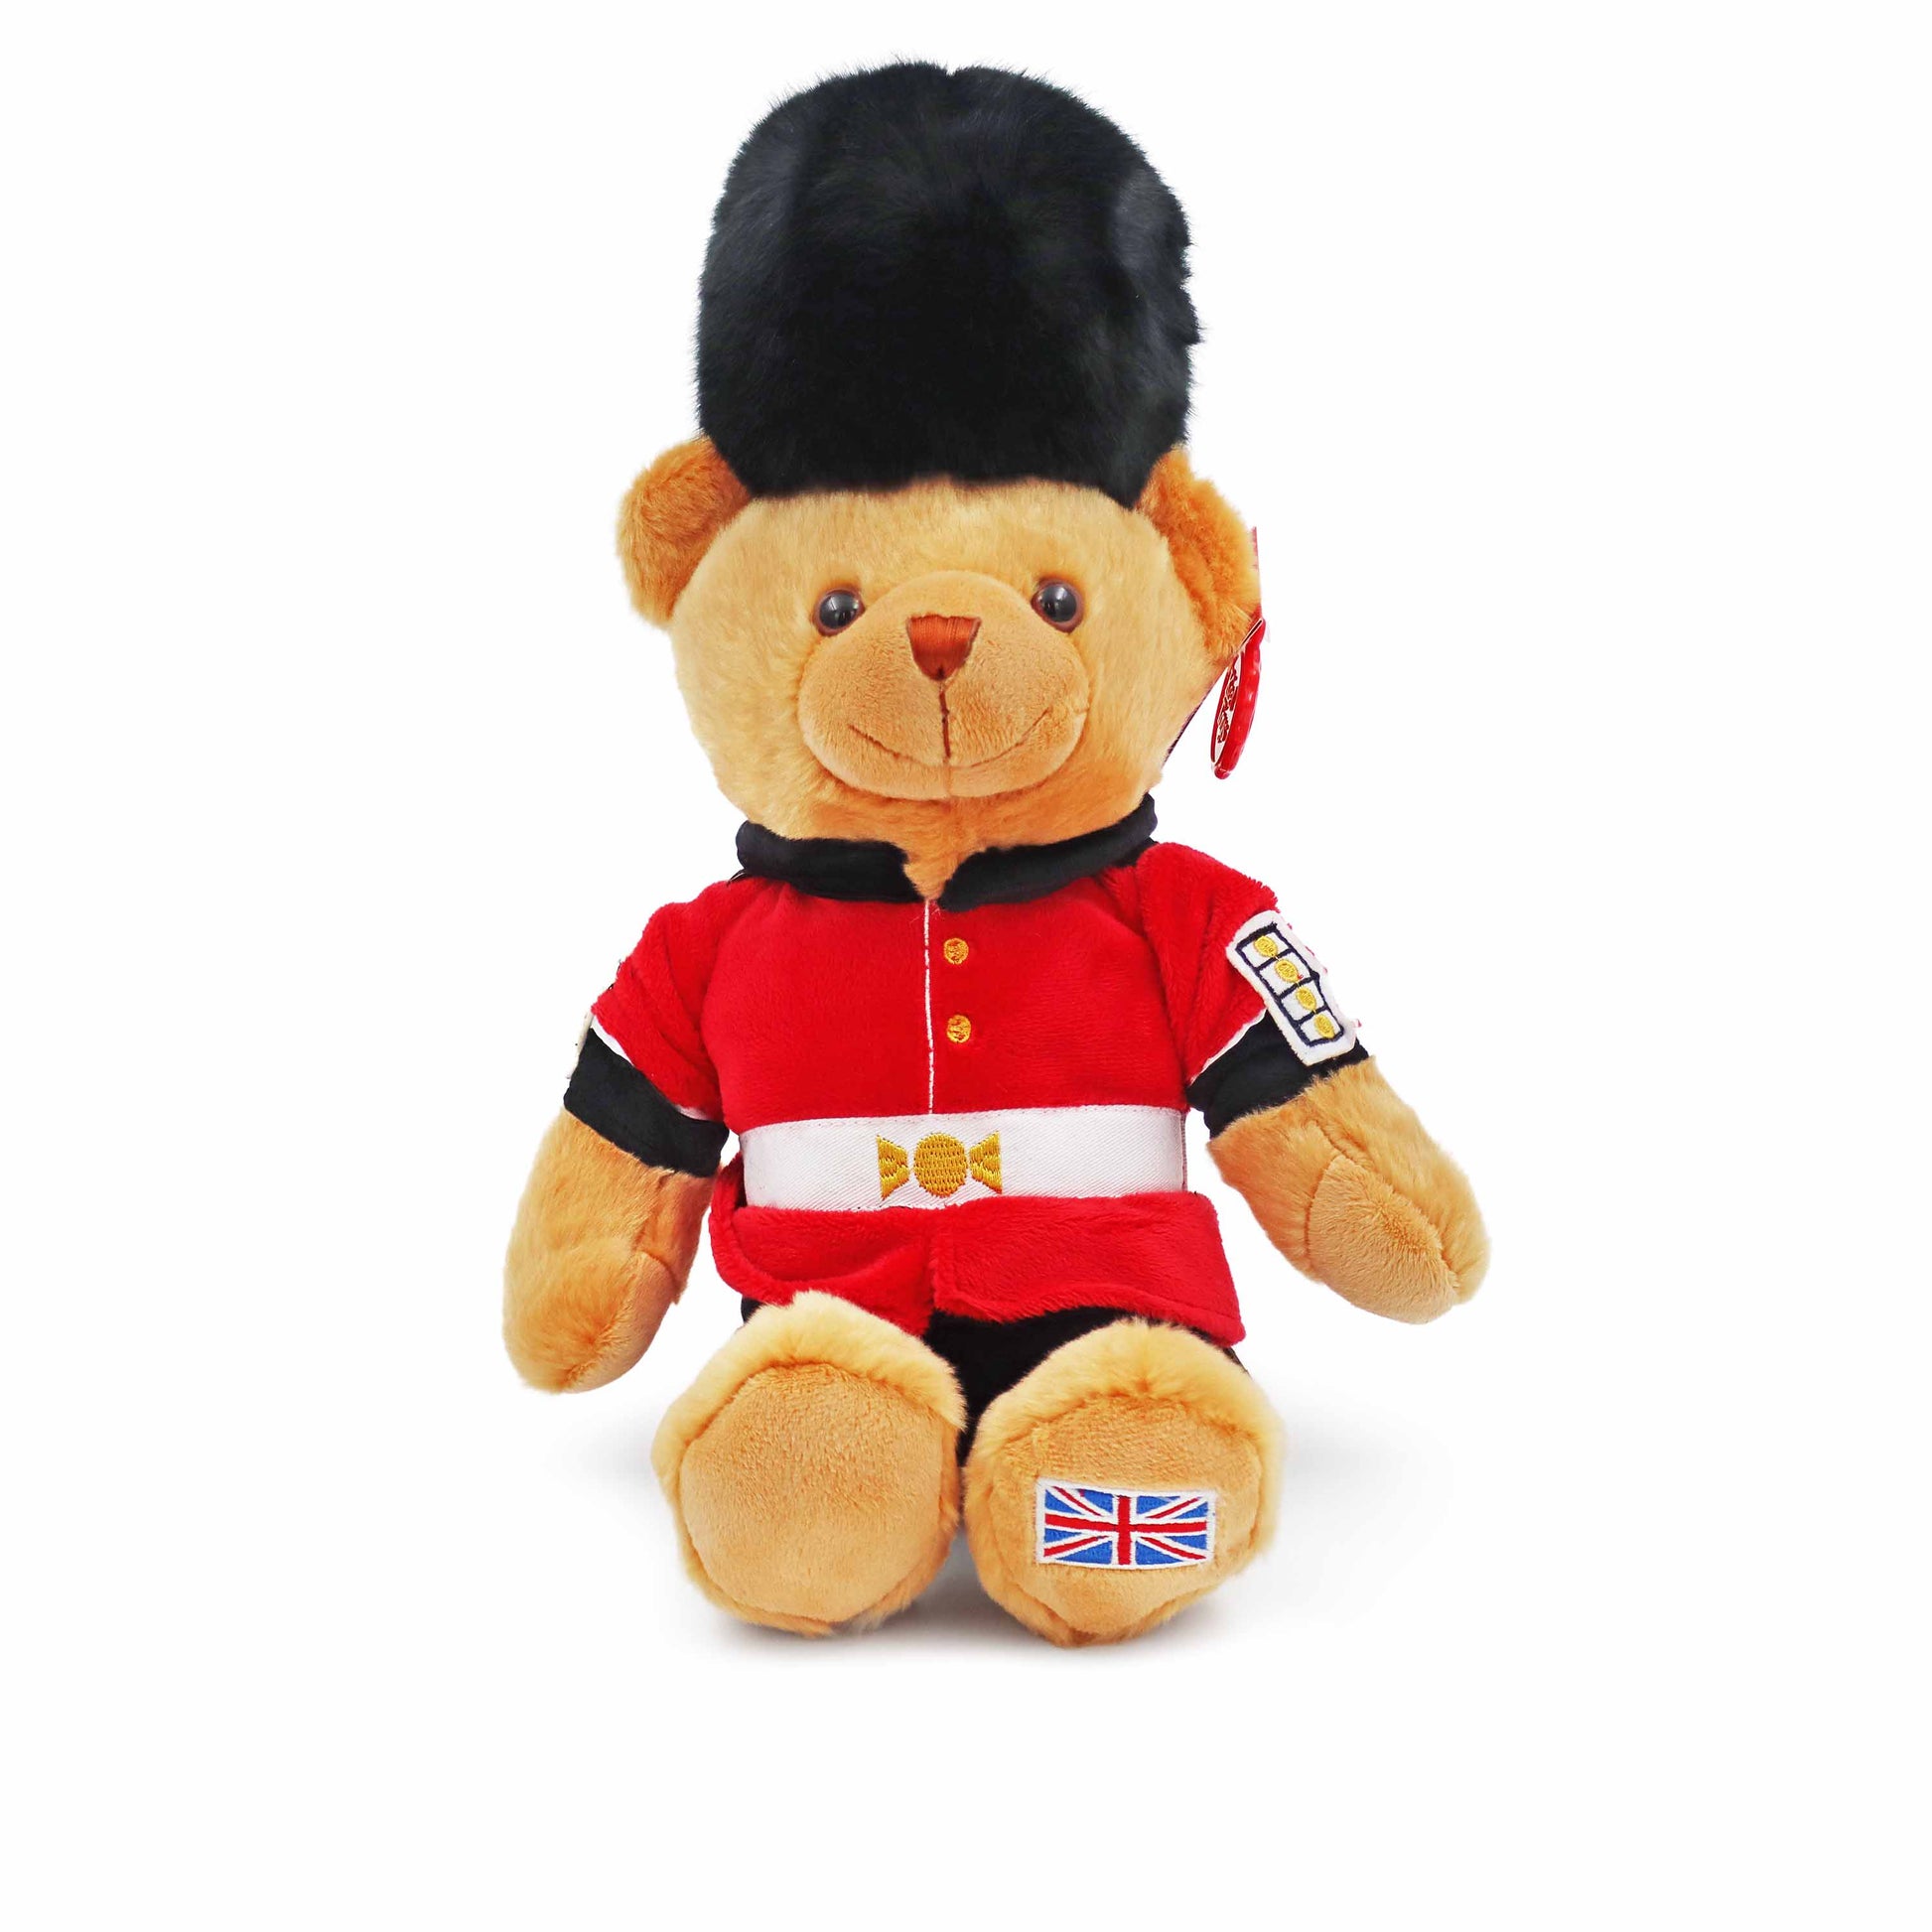 King Guardsman Teddy Bear - 25cm (Large) - London Souvenirs